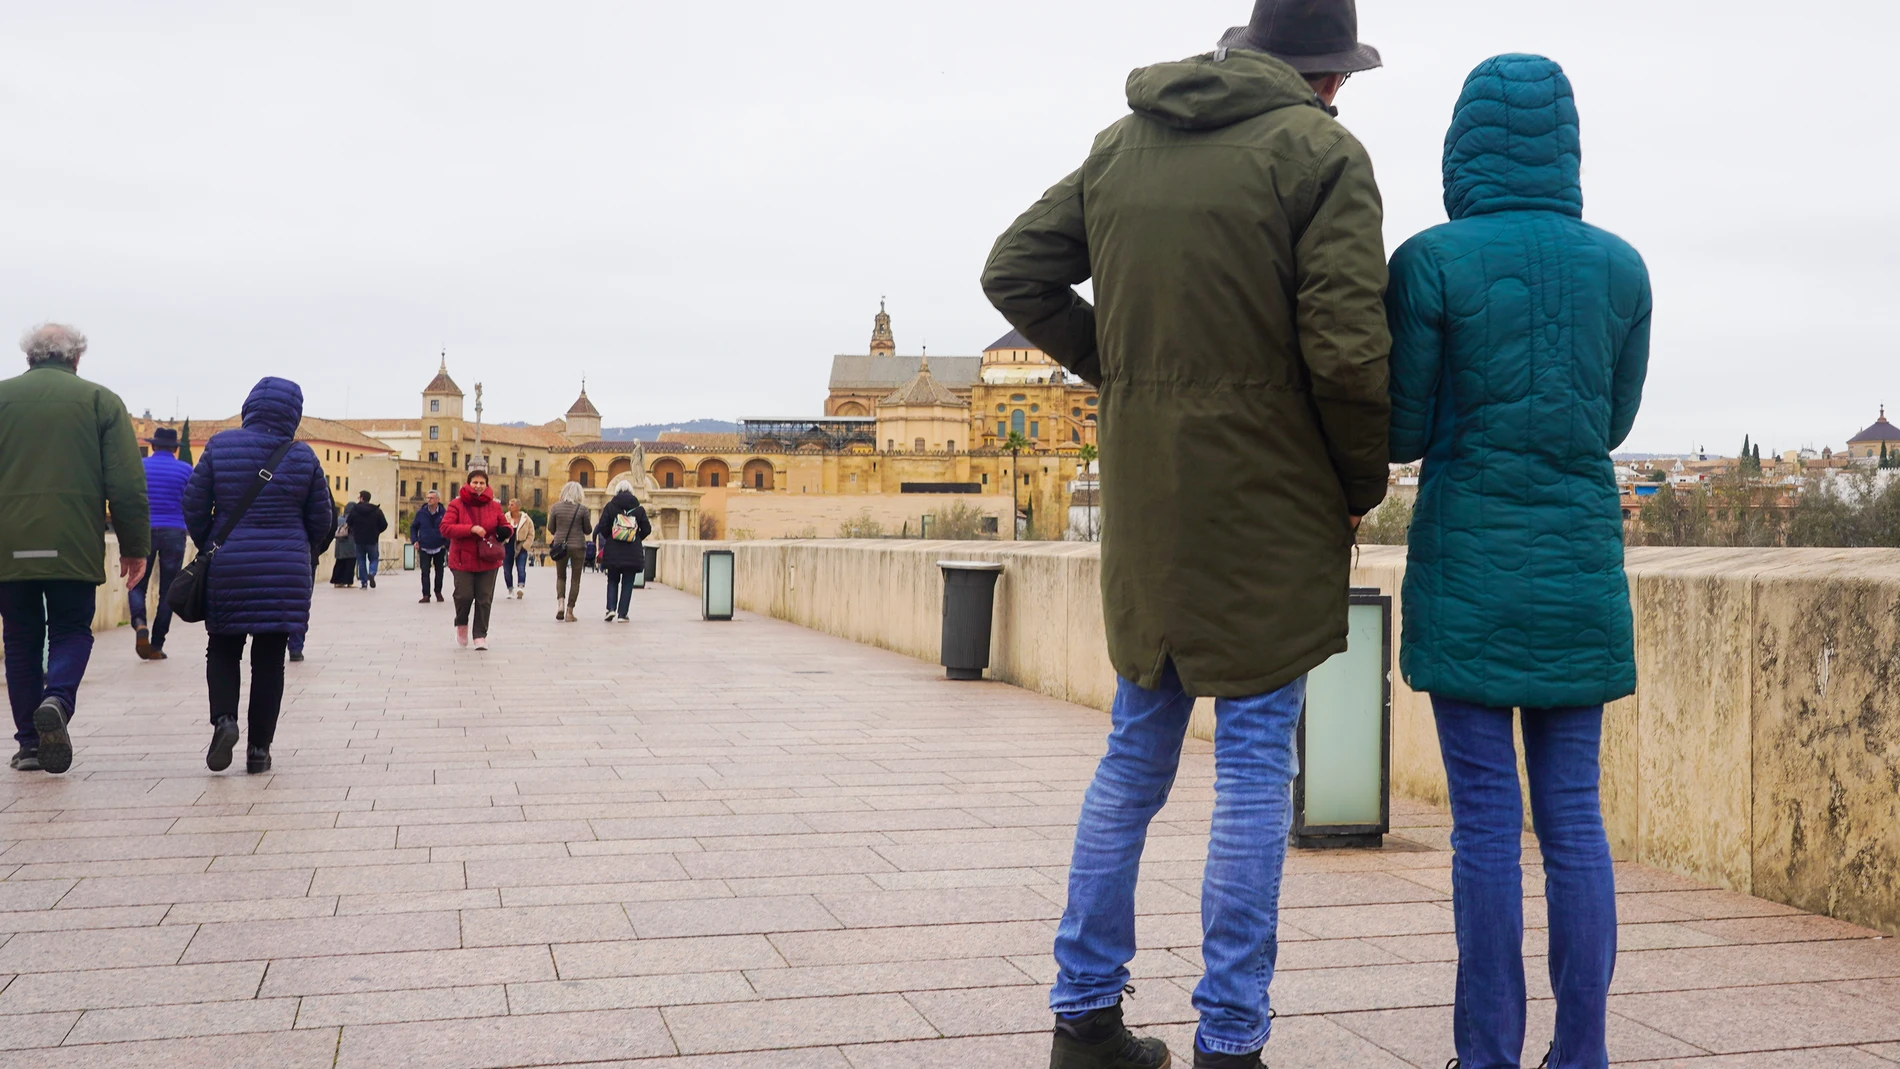 Transeúntes y turistas por el famoso puente de San Rafael con vistas a la Mezquita de Córdoba, en una fría tarde